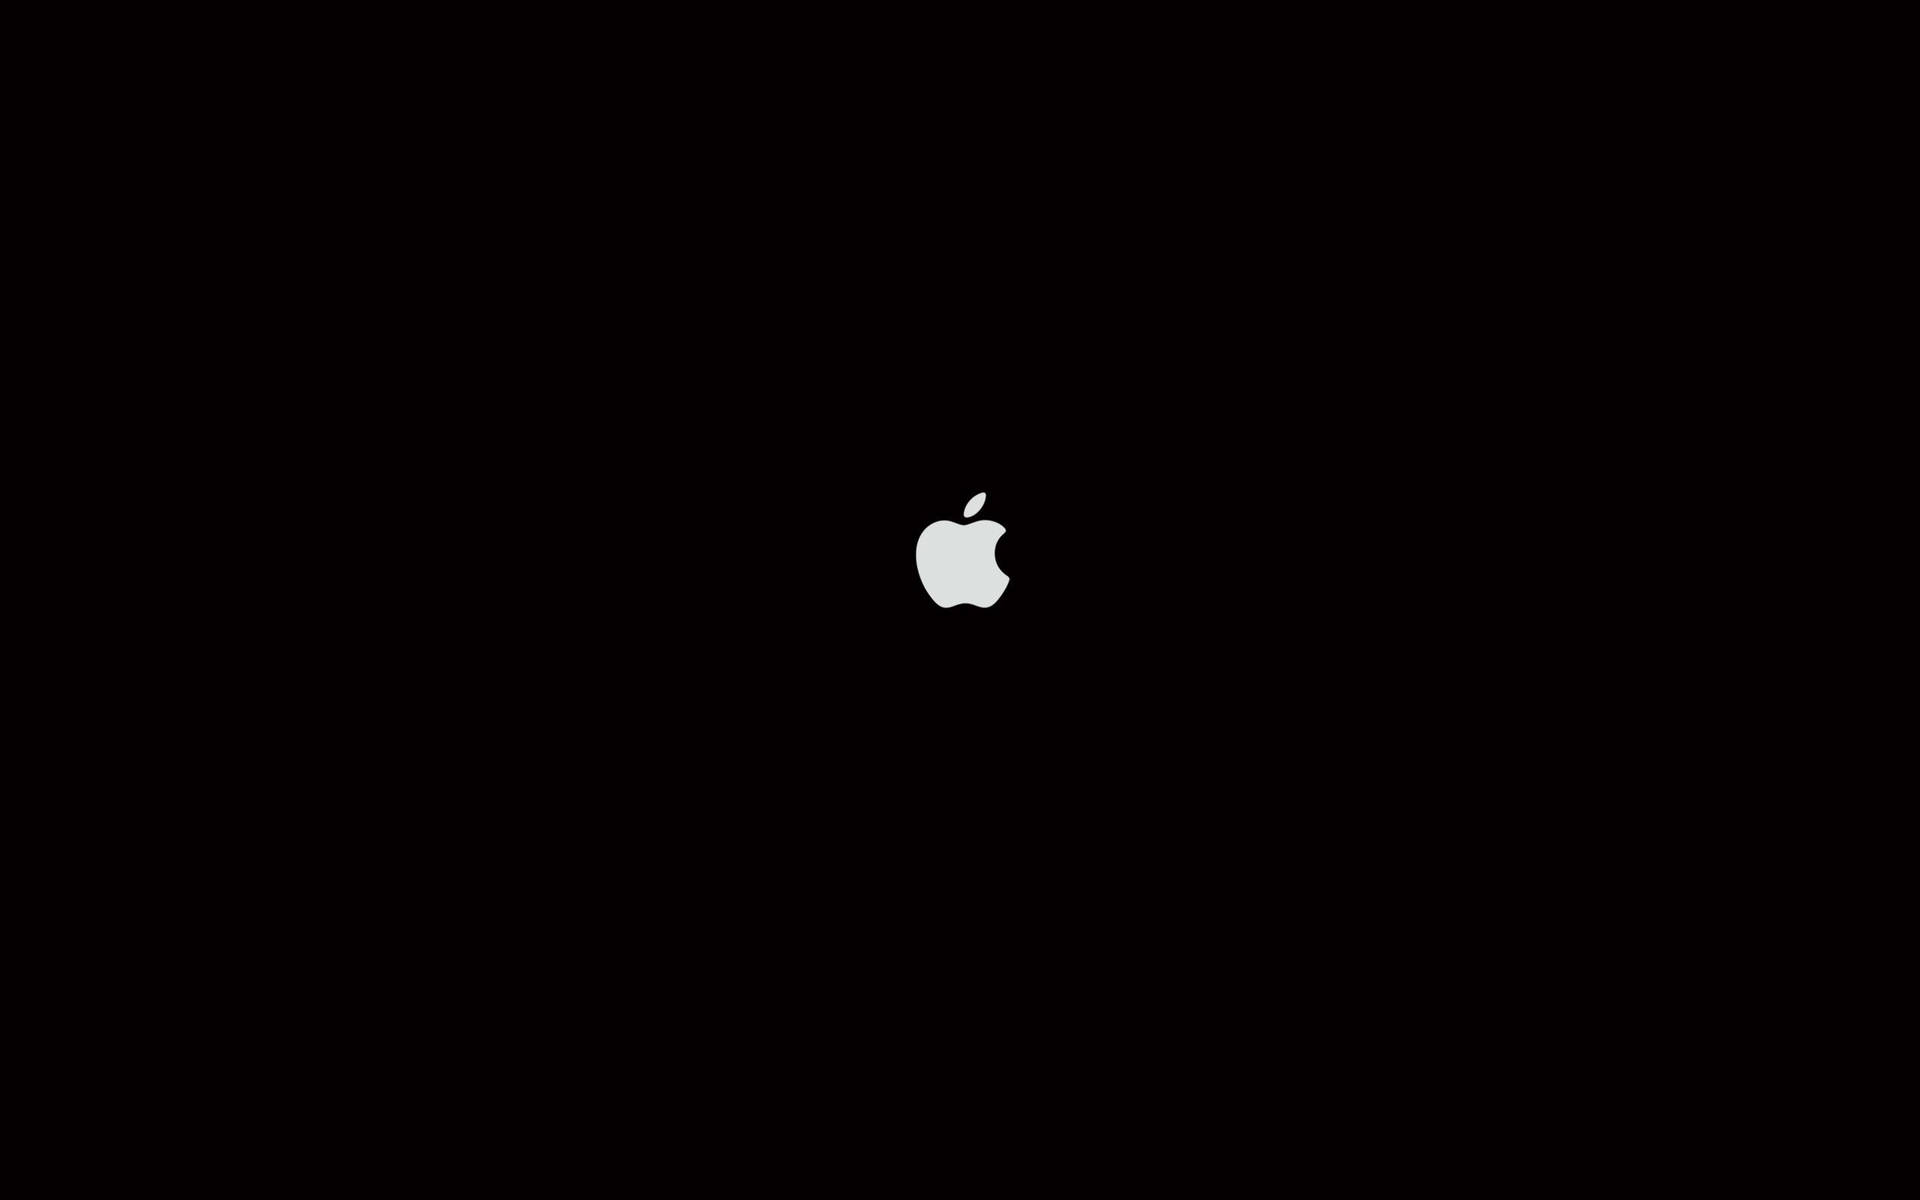 Plain Black And White Apple Logo Wallpaper